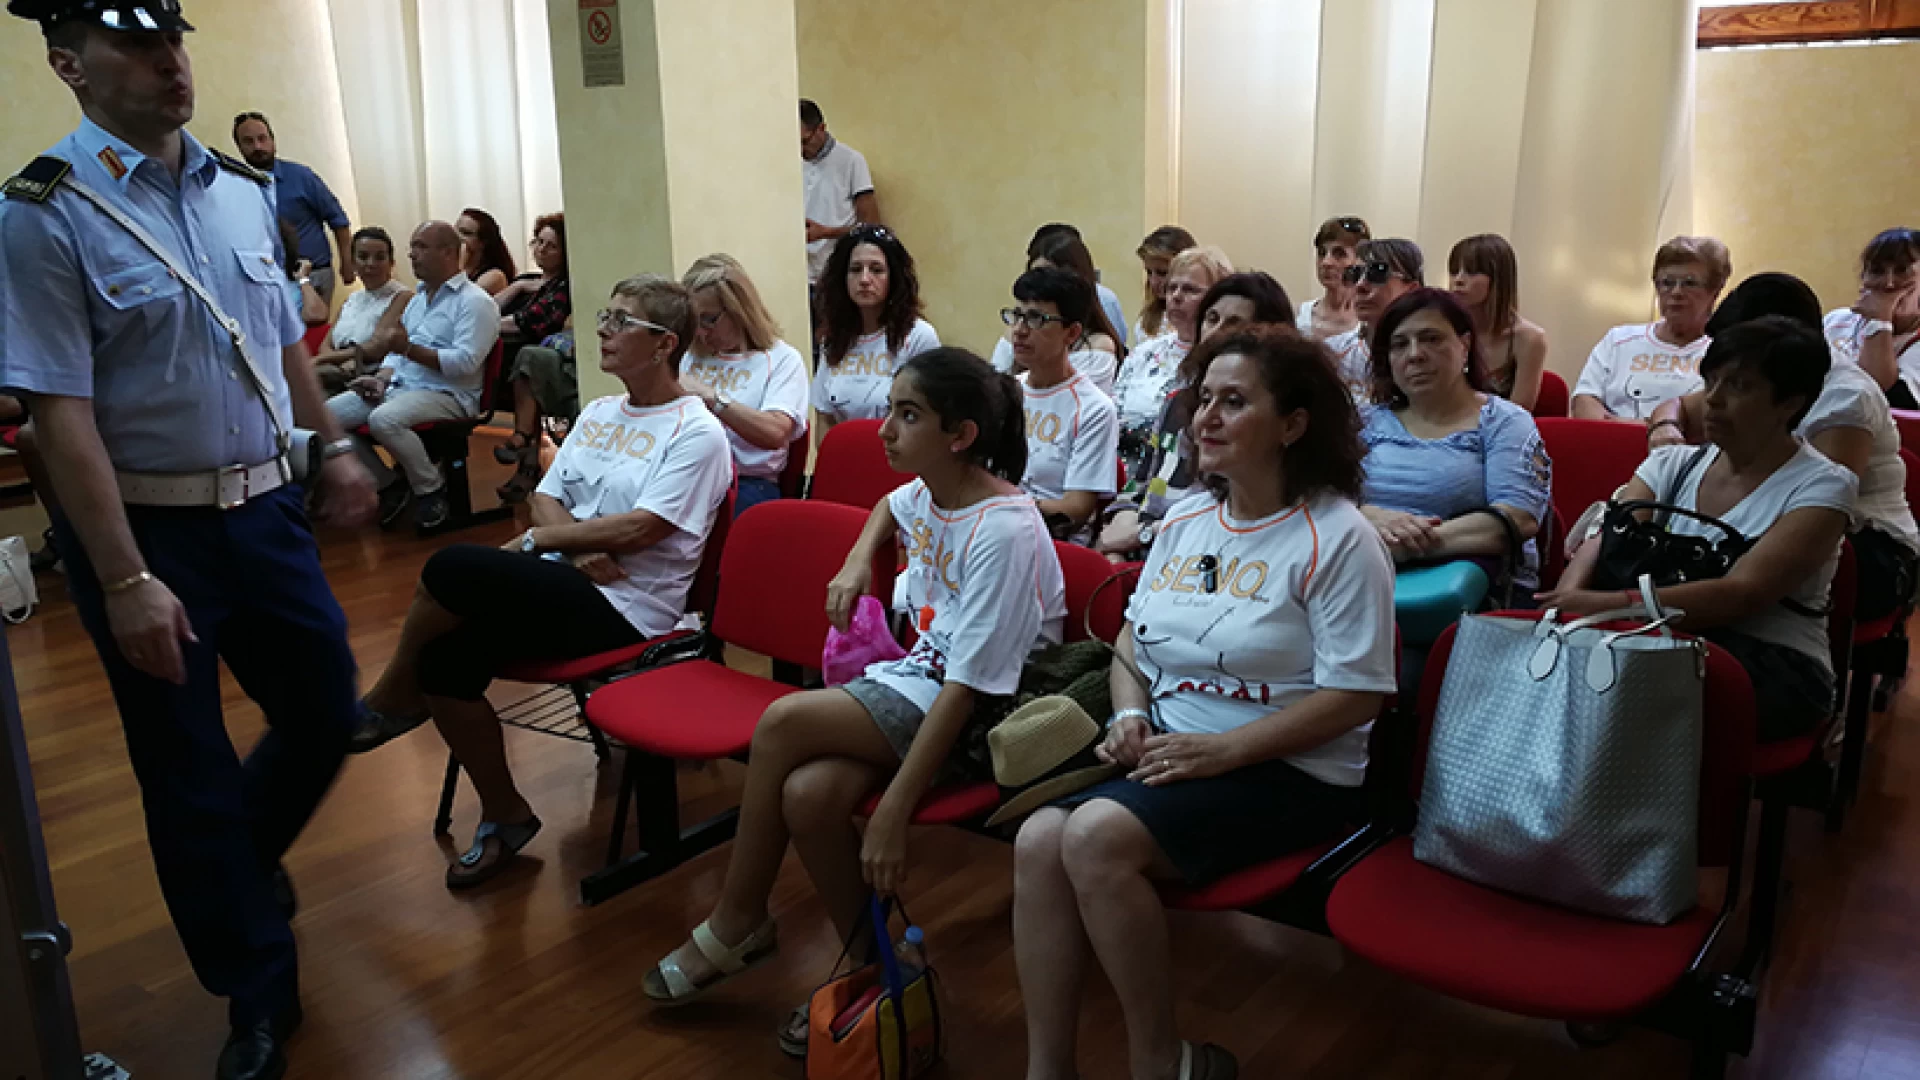 “Supportati si, usati mai”. Il comitato per la salvaguardia del reparto di senologia del Veneziale fanno il punto della protesta di ieri.